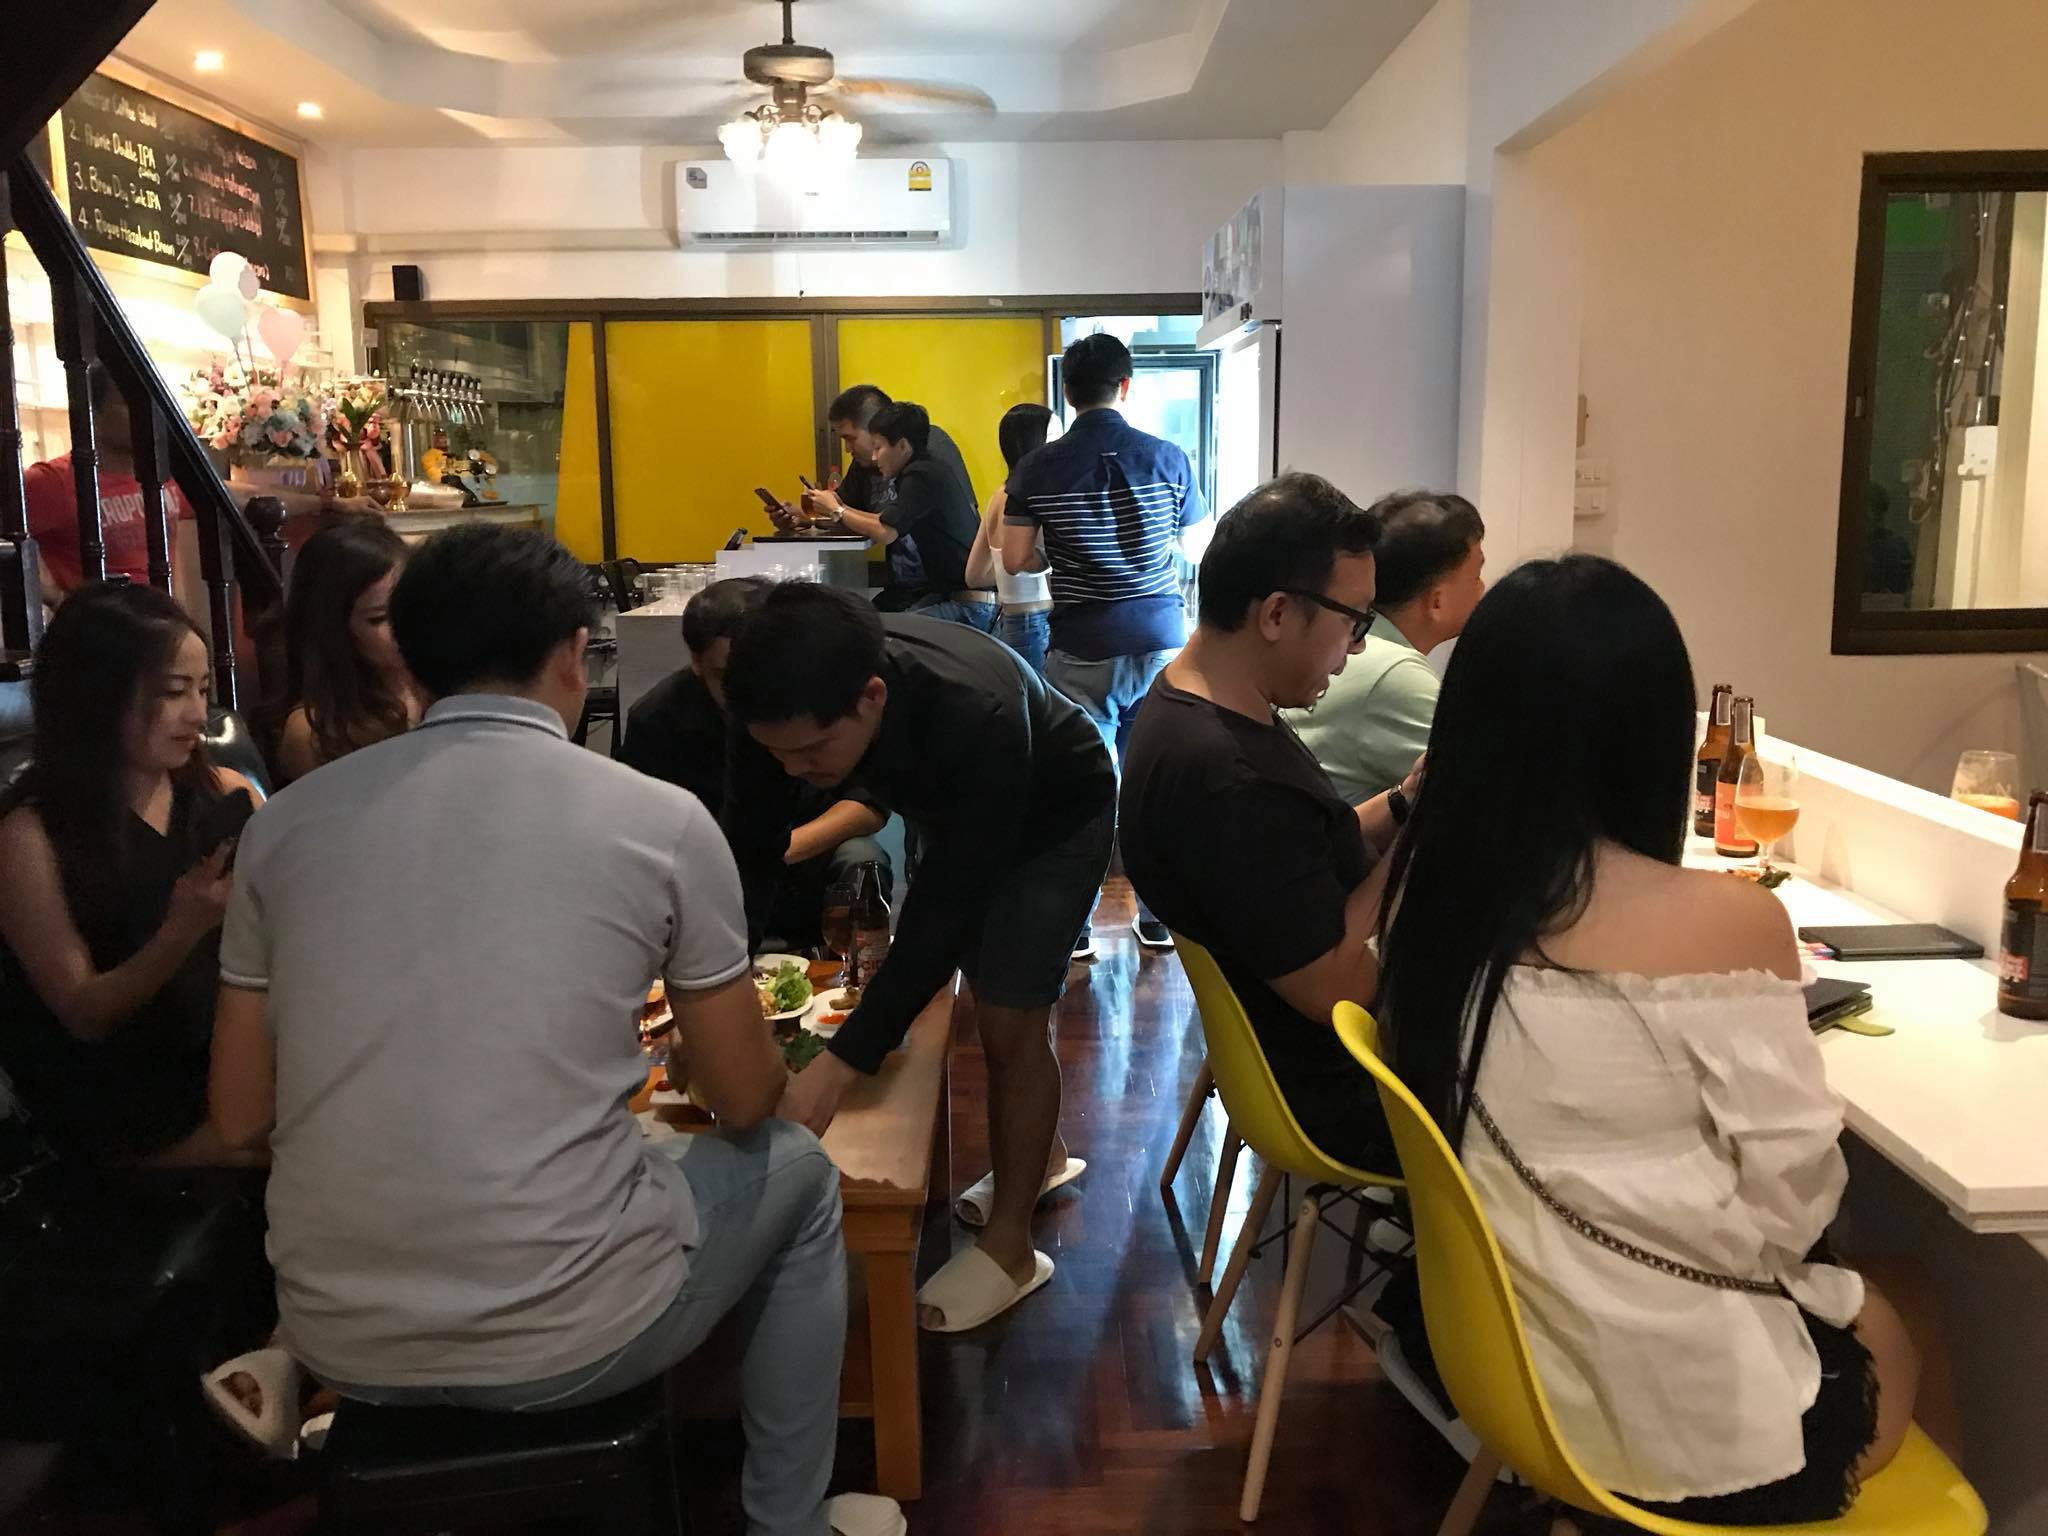 เนคทาร์ คาเฟ่ (Nectar Café) : กรุงเทพมหานคร (Bangkok)